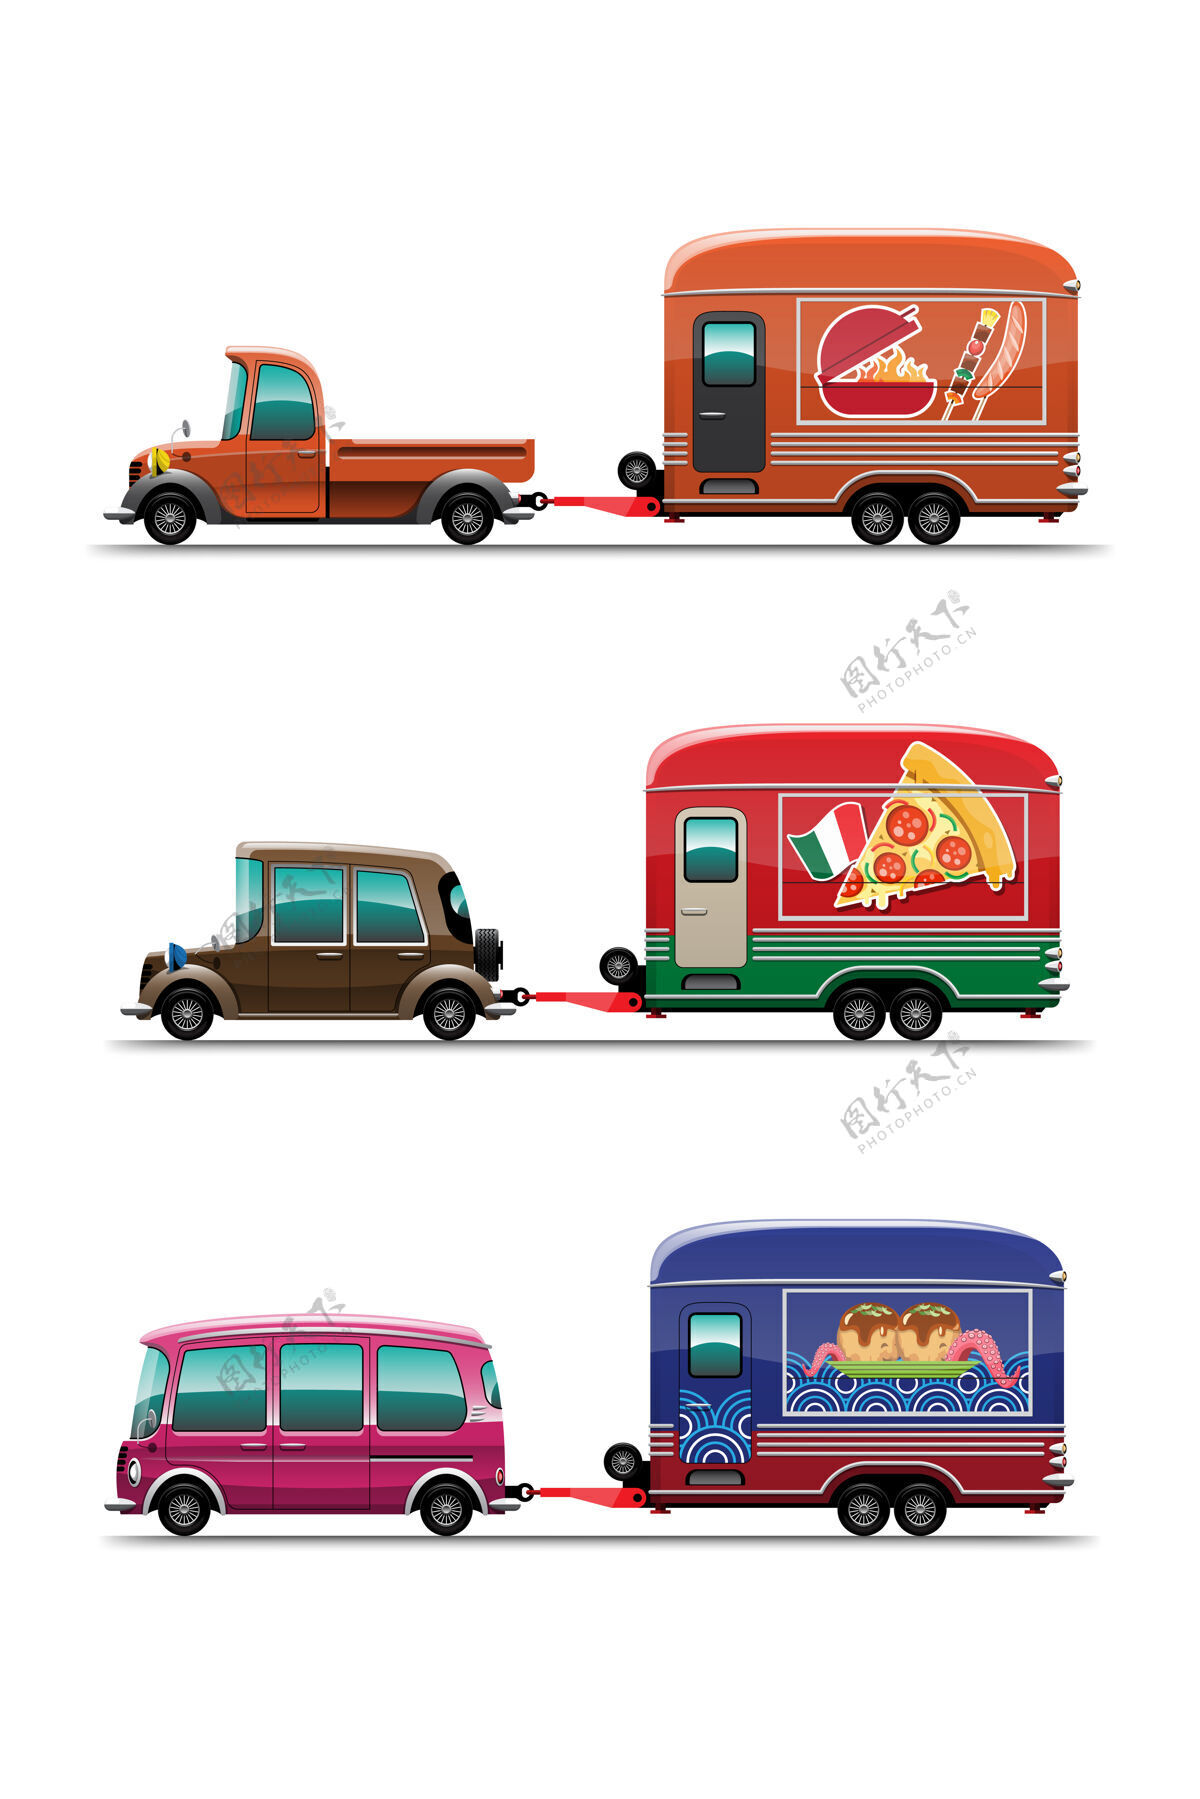 车轮一套拖车食品车 带bar-b-q烤架 比萨饼和东京日本食品店 白色背景上有绘画风格的平面插图送货菜单促销